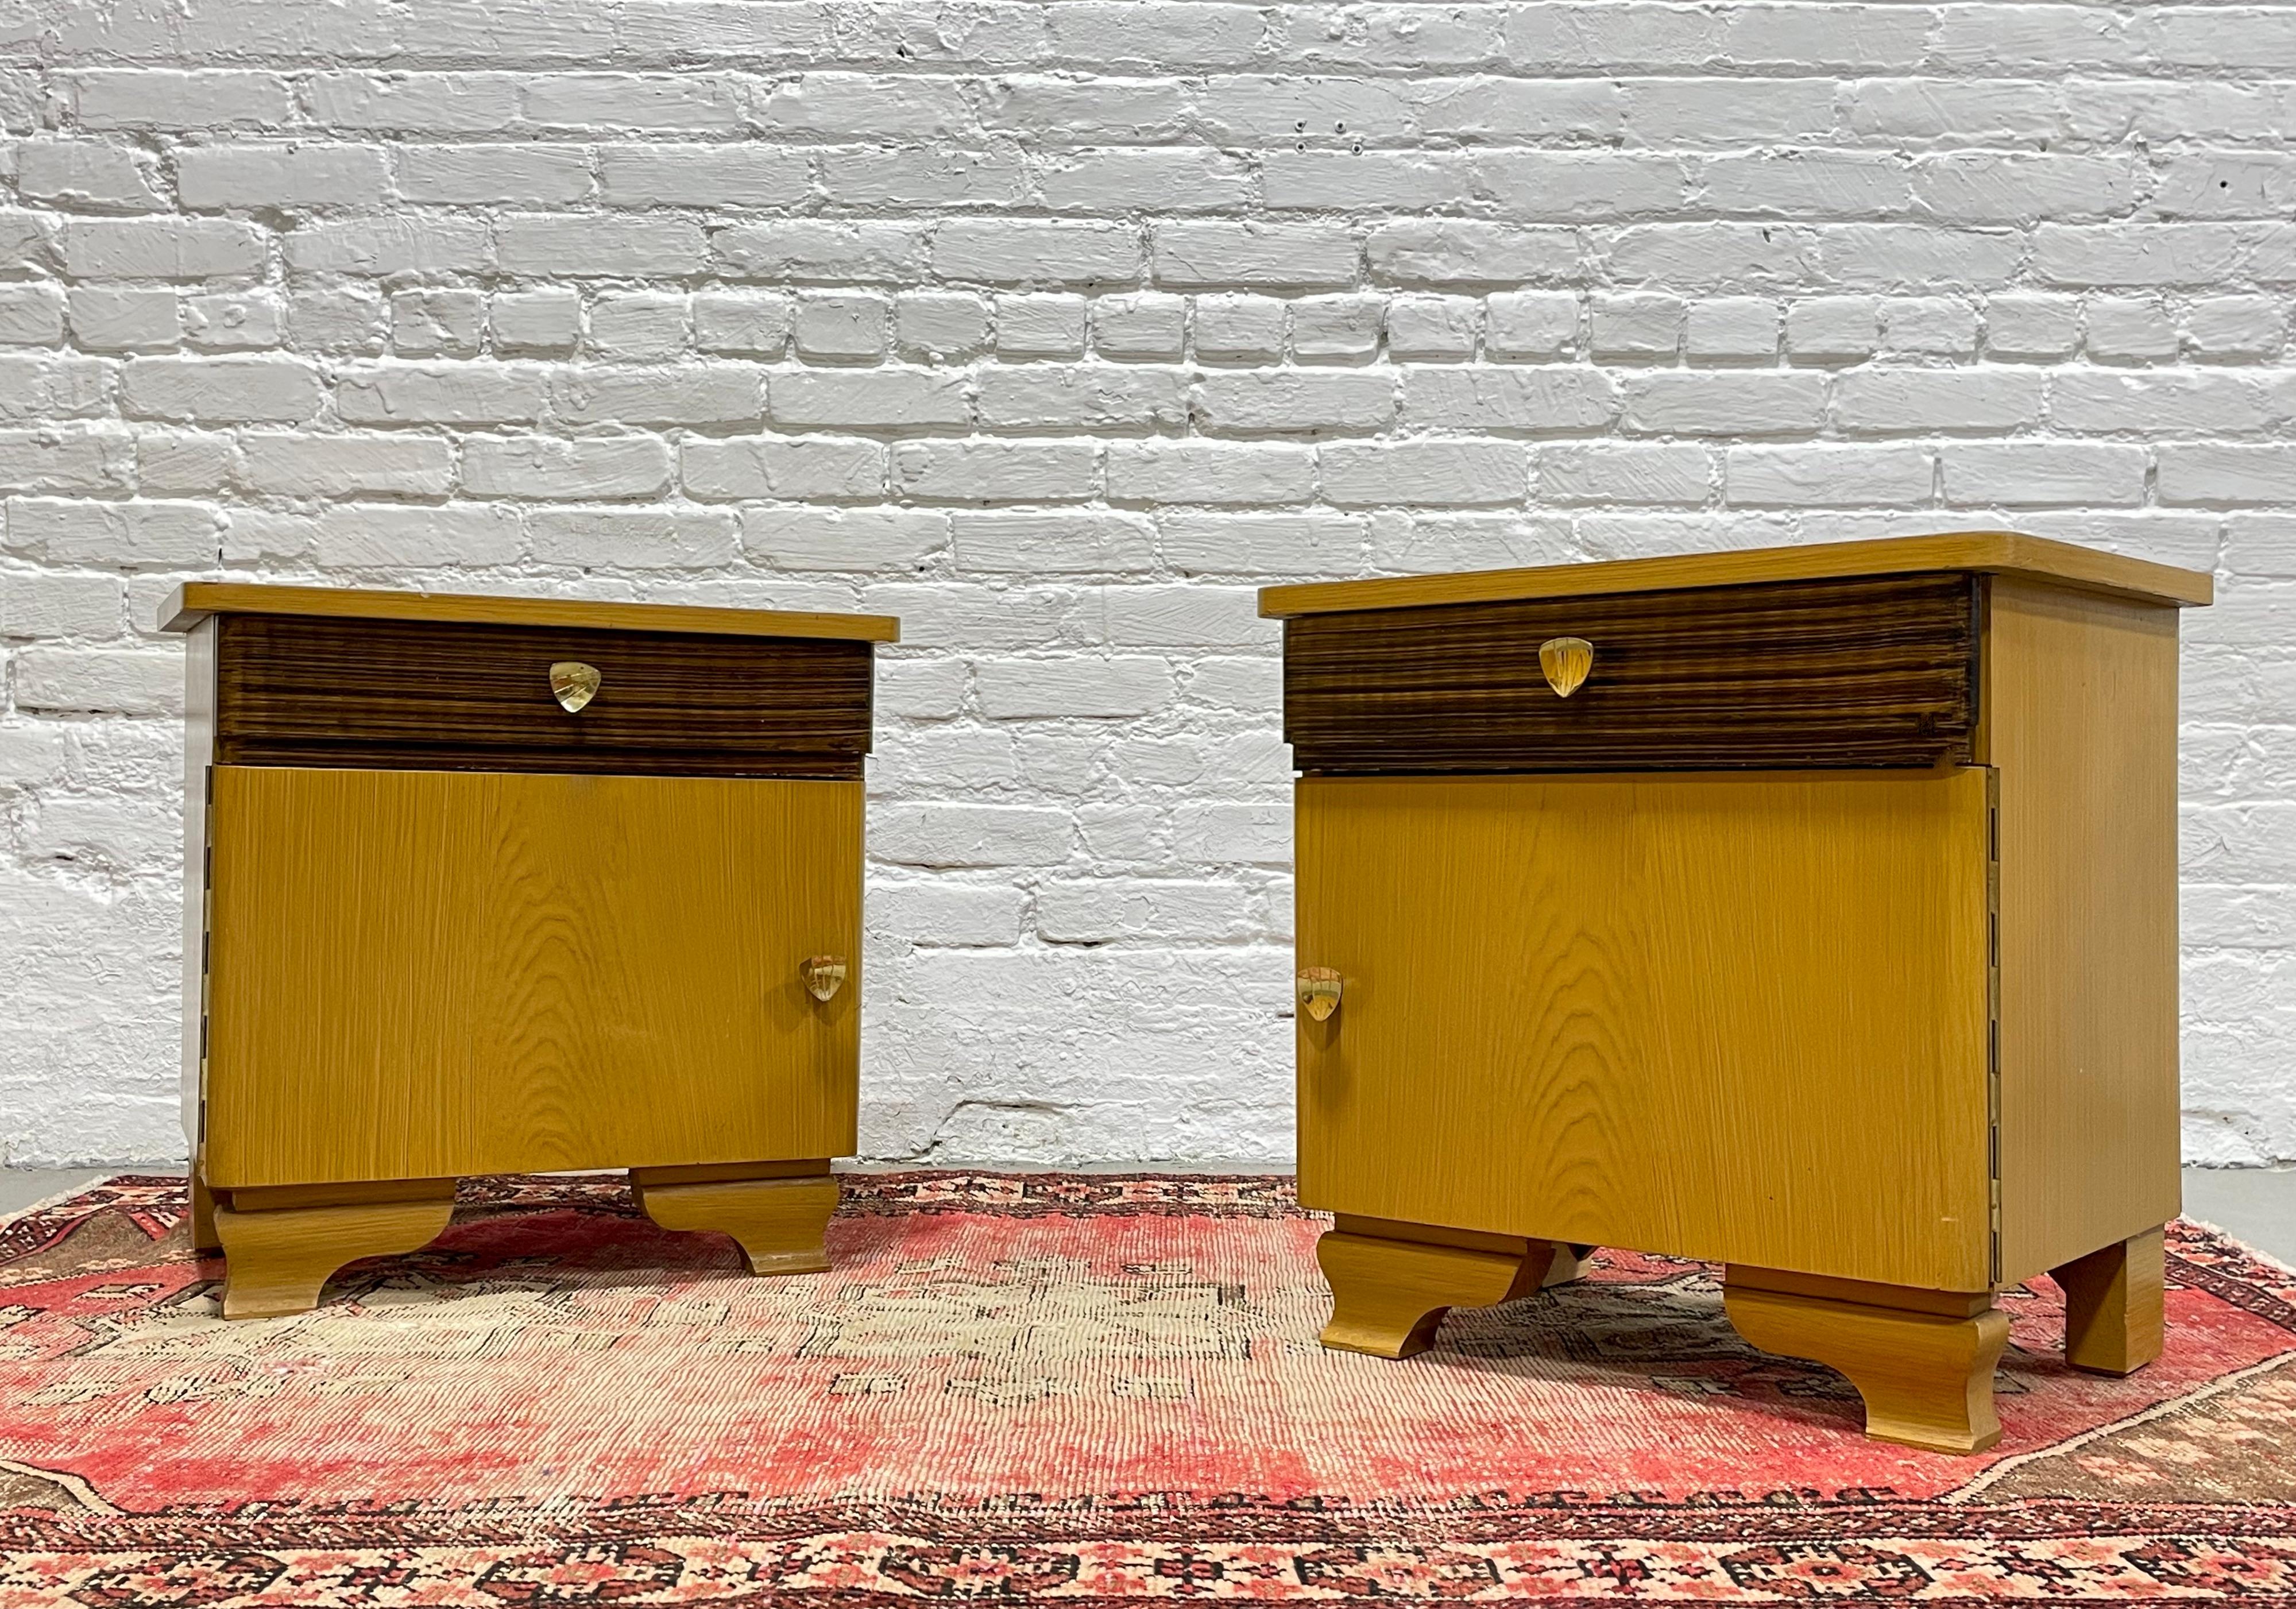 Paar niederländische moderne Nachttische, um 1950. Dieses hübsche Paar hat ein Art-Déco-Flair mit prächtigen Beinen und goldfarbenen Griffen. Wunderschönes zweifarbiges Design - lässt sich leicht mit anderen Holztönen kombinieren. Jedes